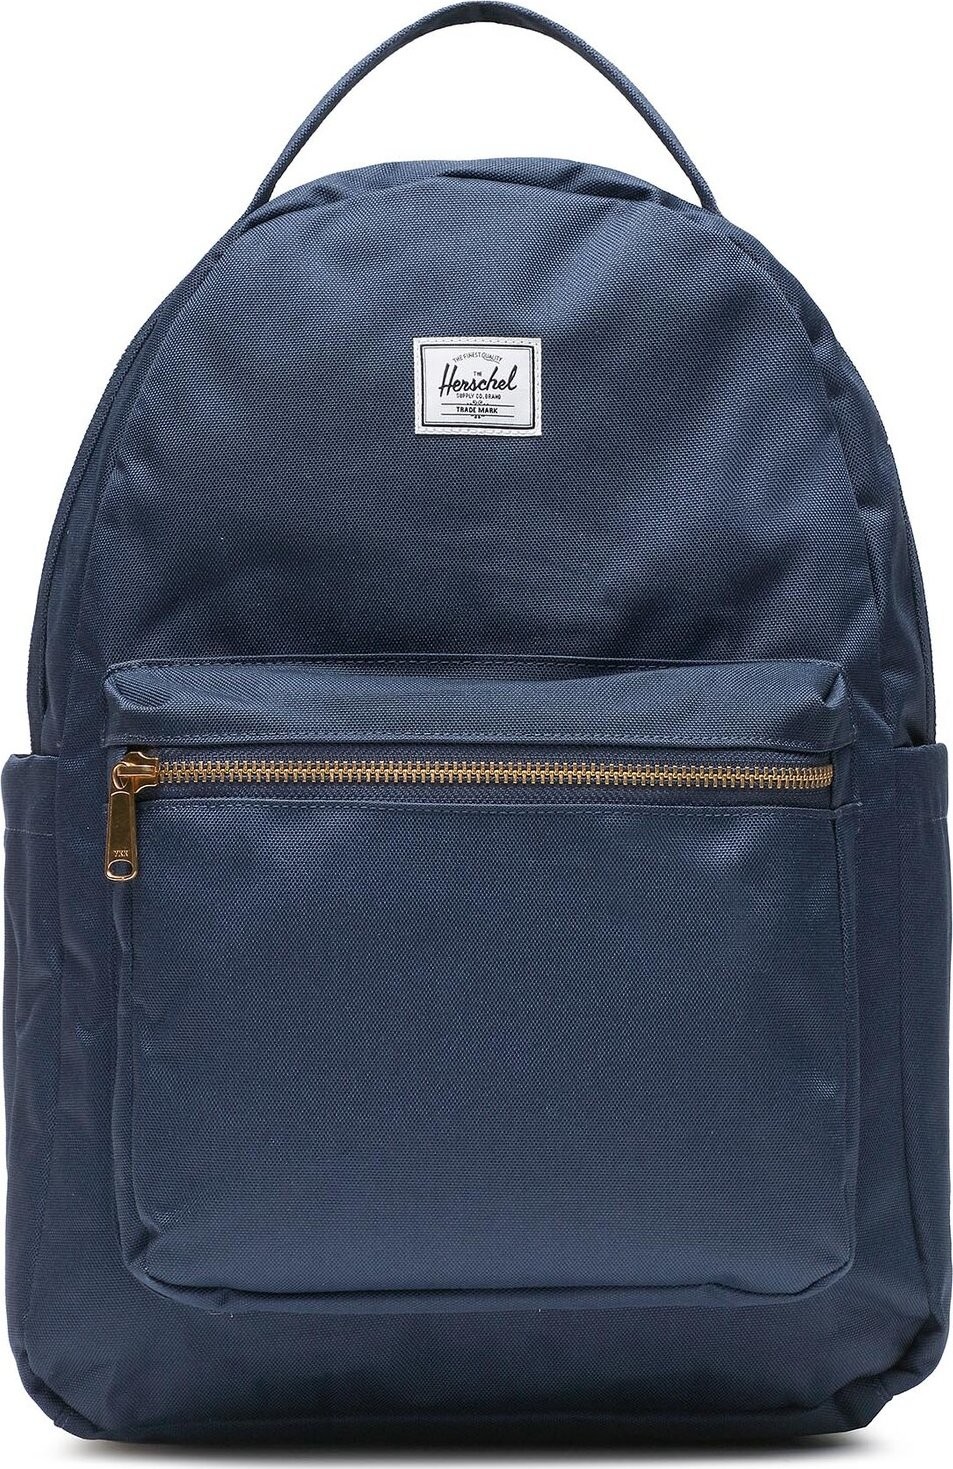 Batoh Herschel Nova™ Backpack 11392-00007 Navy